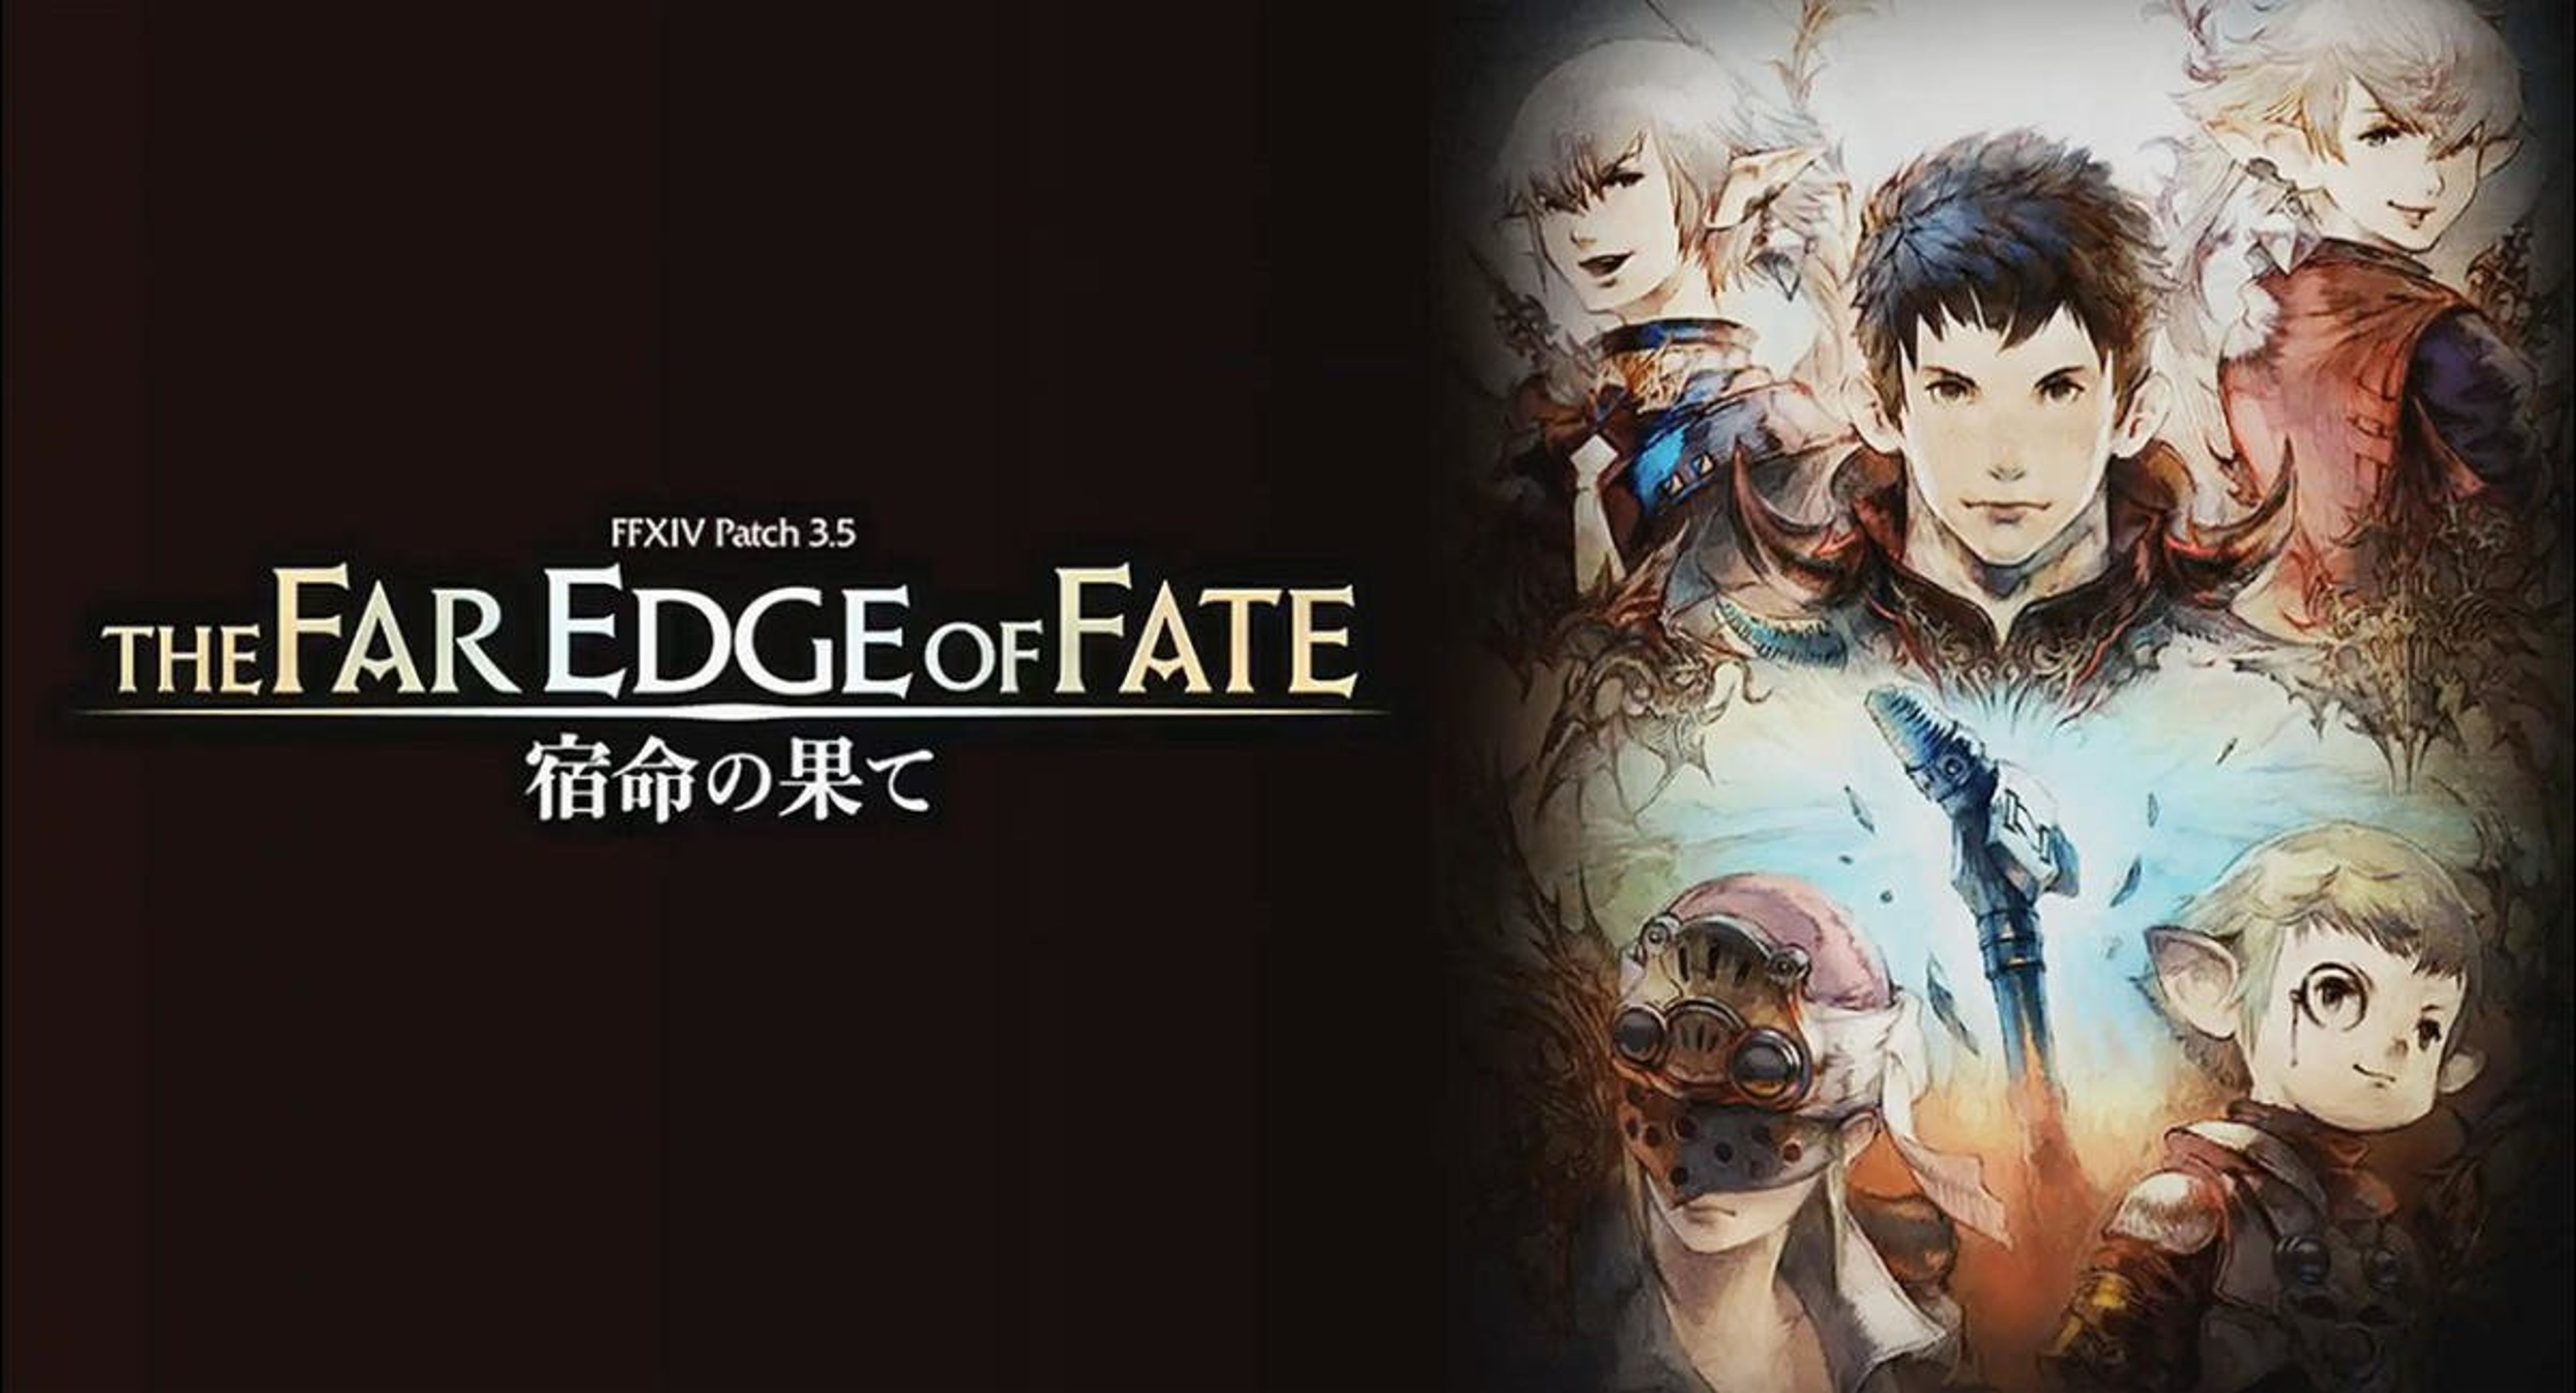 Final Fantasy XIV: The Far Edge of Fate – Rilasciato un trailer e nuovi dettagli sulla patch 3.5